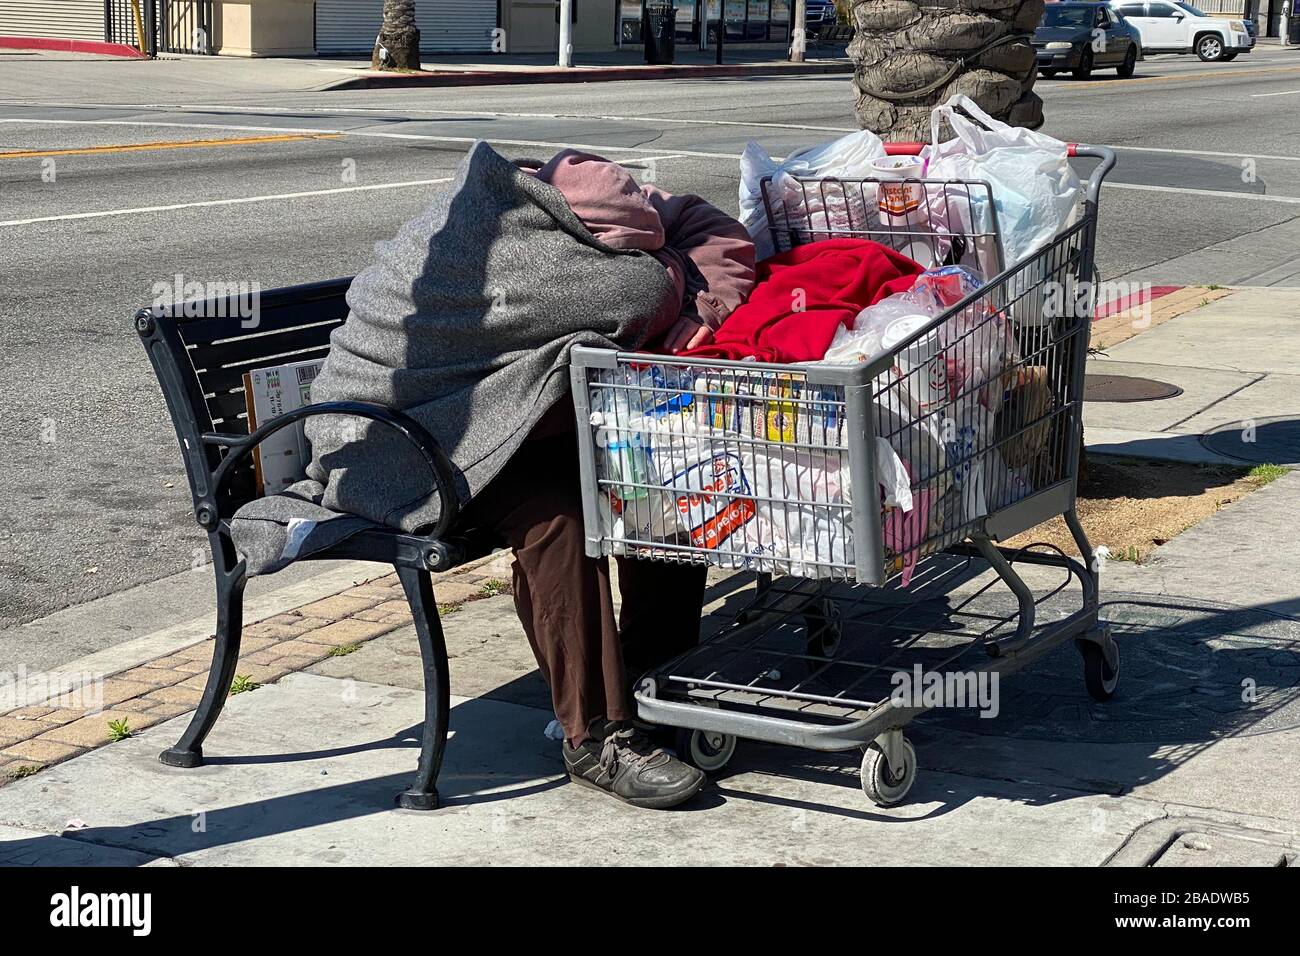 Una persona senza casa con una macchina per lo shopping siede su un banco di autobus a Whittier Blvd. In mezzo al coroinavirus globale COVID-19 epidemia pandemica, Giovedi, 26 marzo 2020, a Los Angeles. (Foto di IOS/Espa-Images) Foto Stock